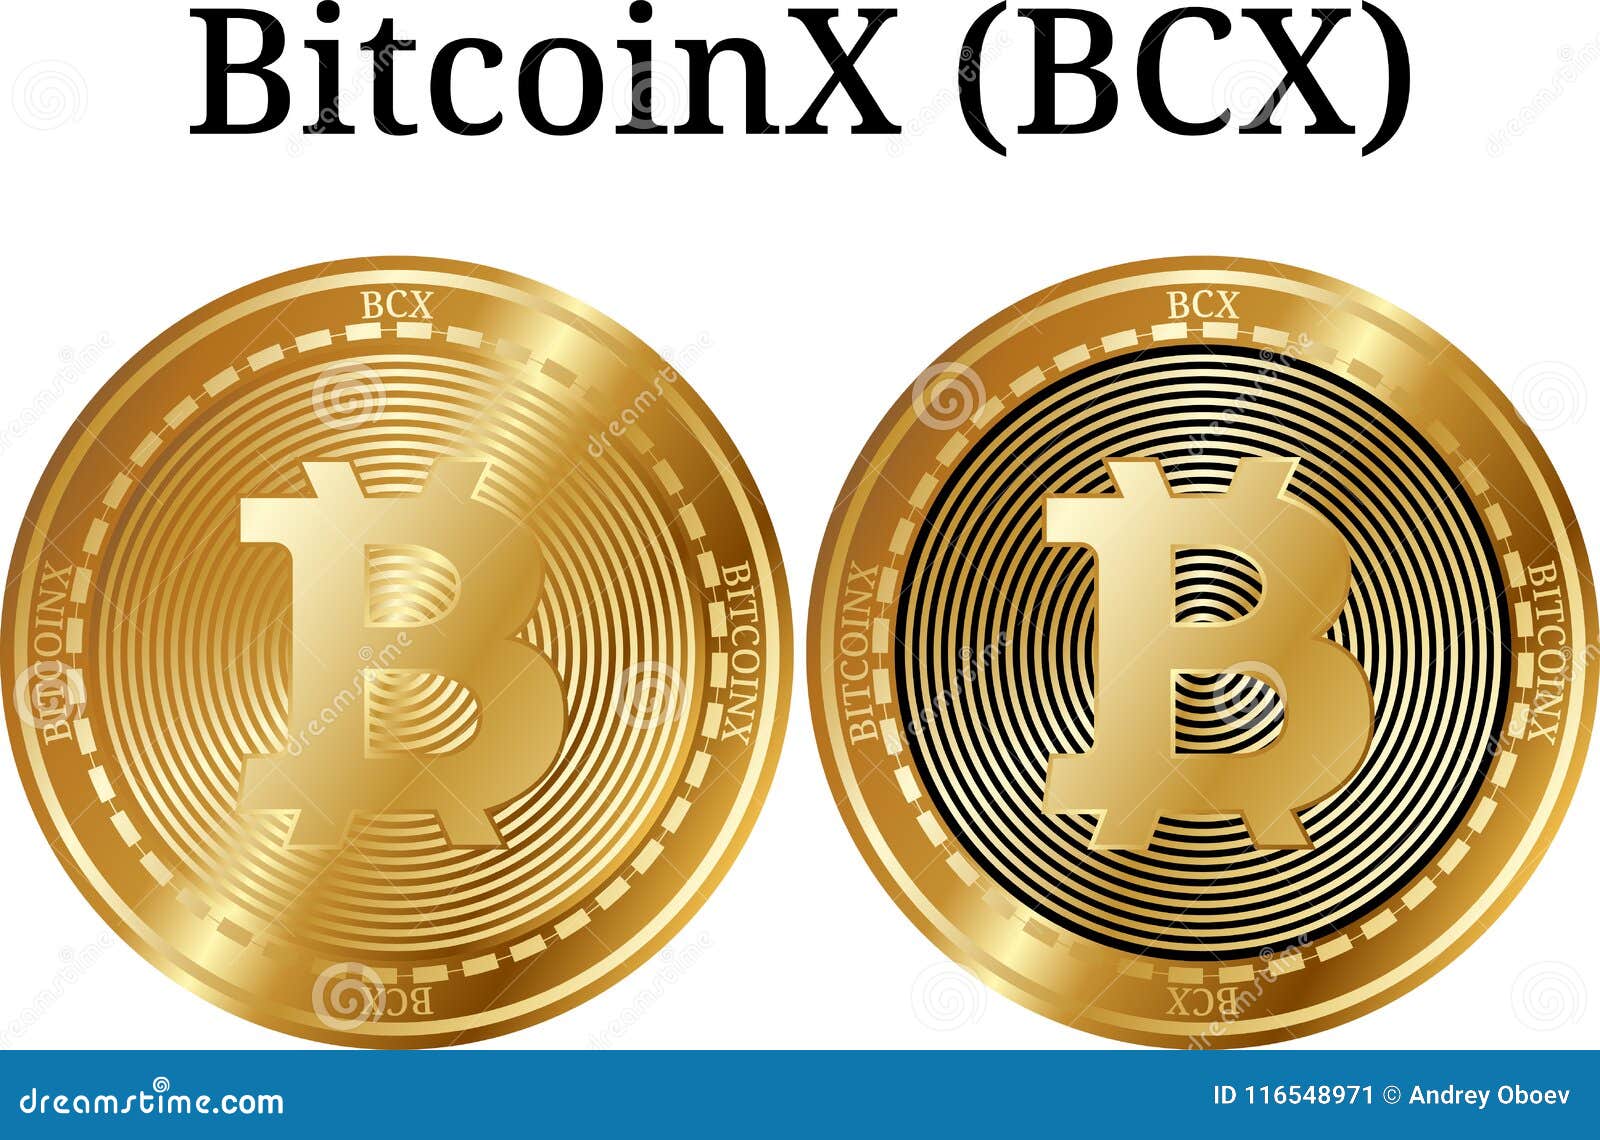 bcx bitcoin)